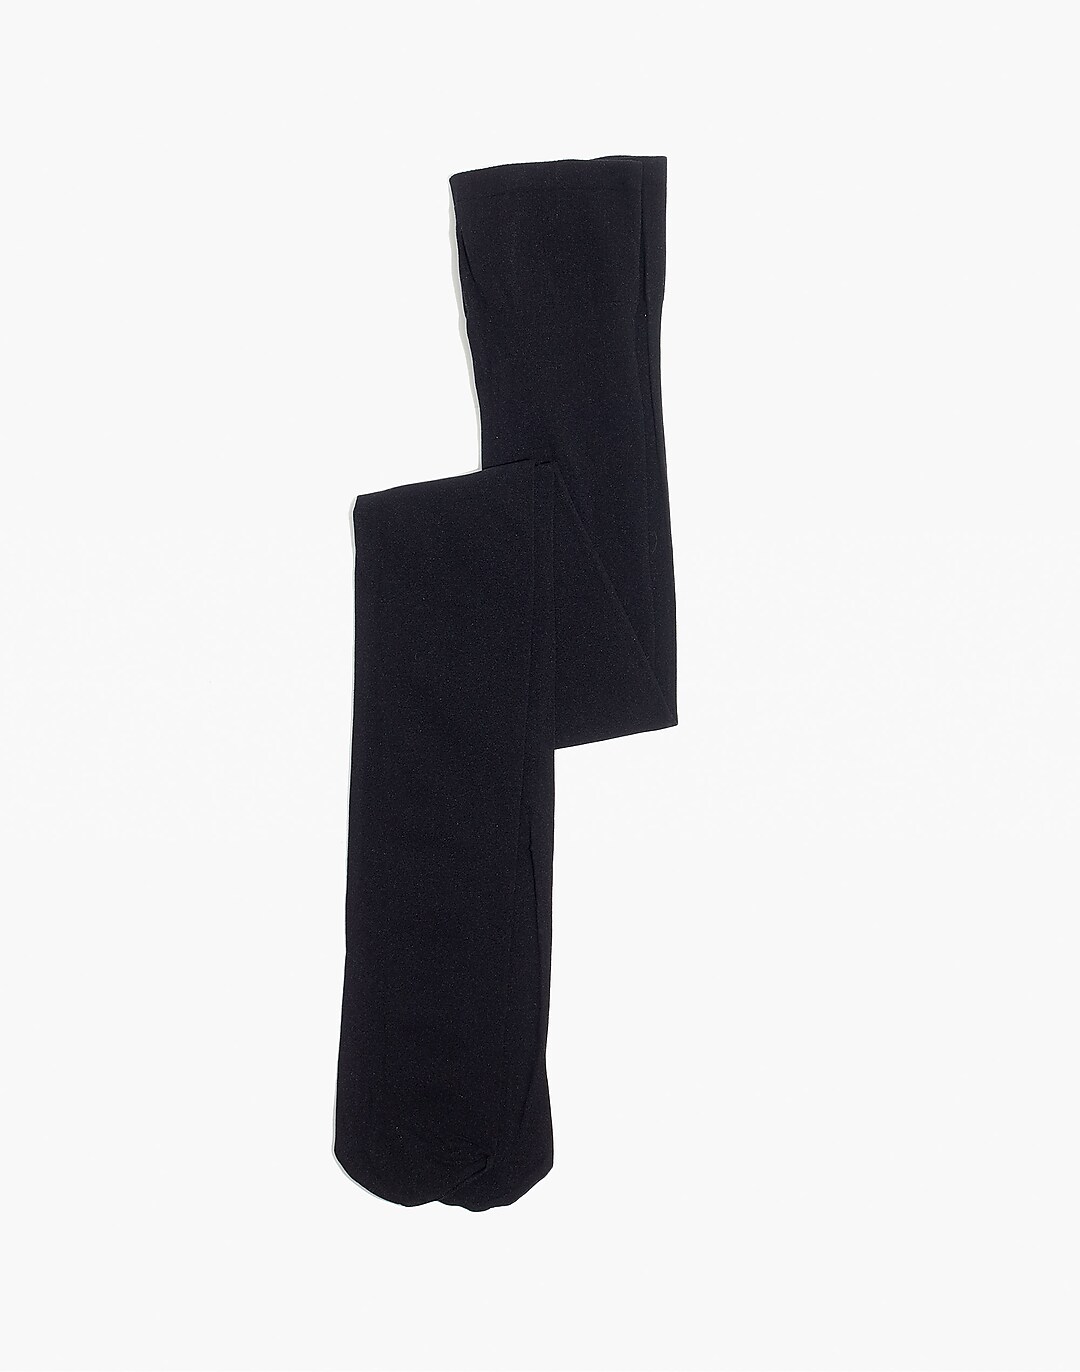 Swedish Stocking Olivia Premium Tights - Black